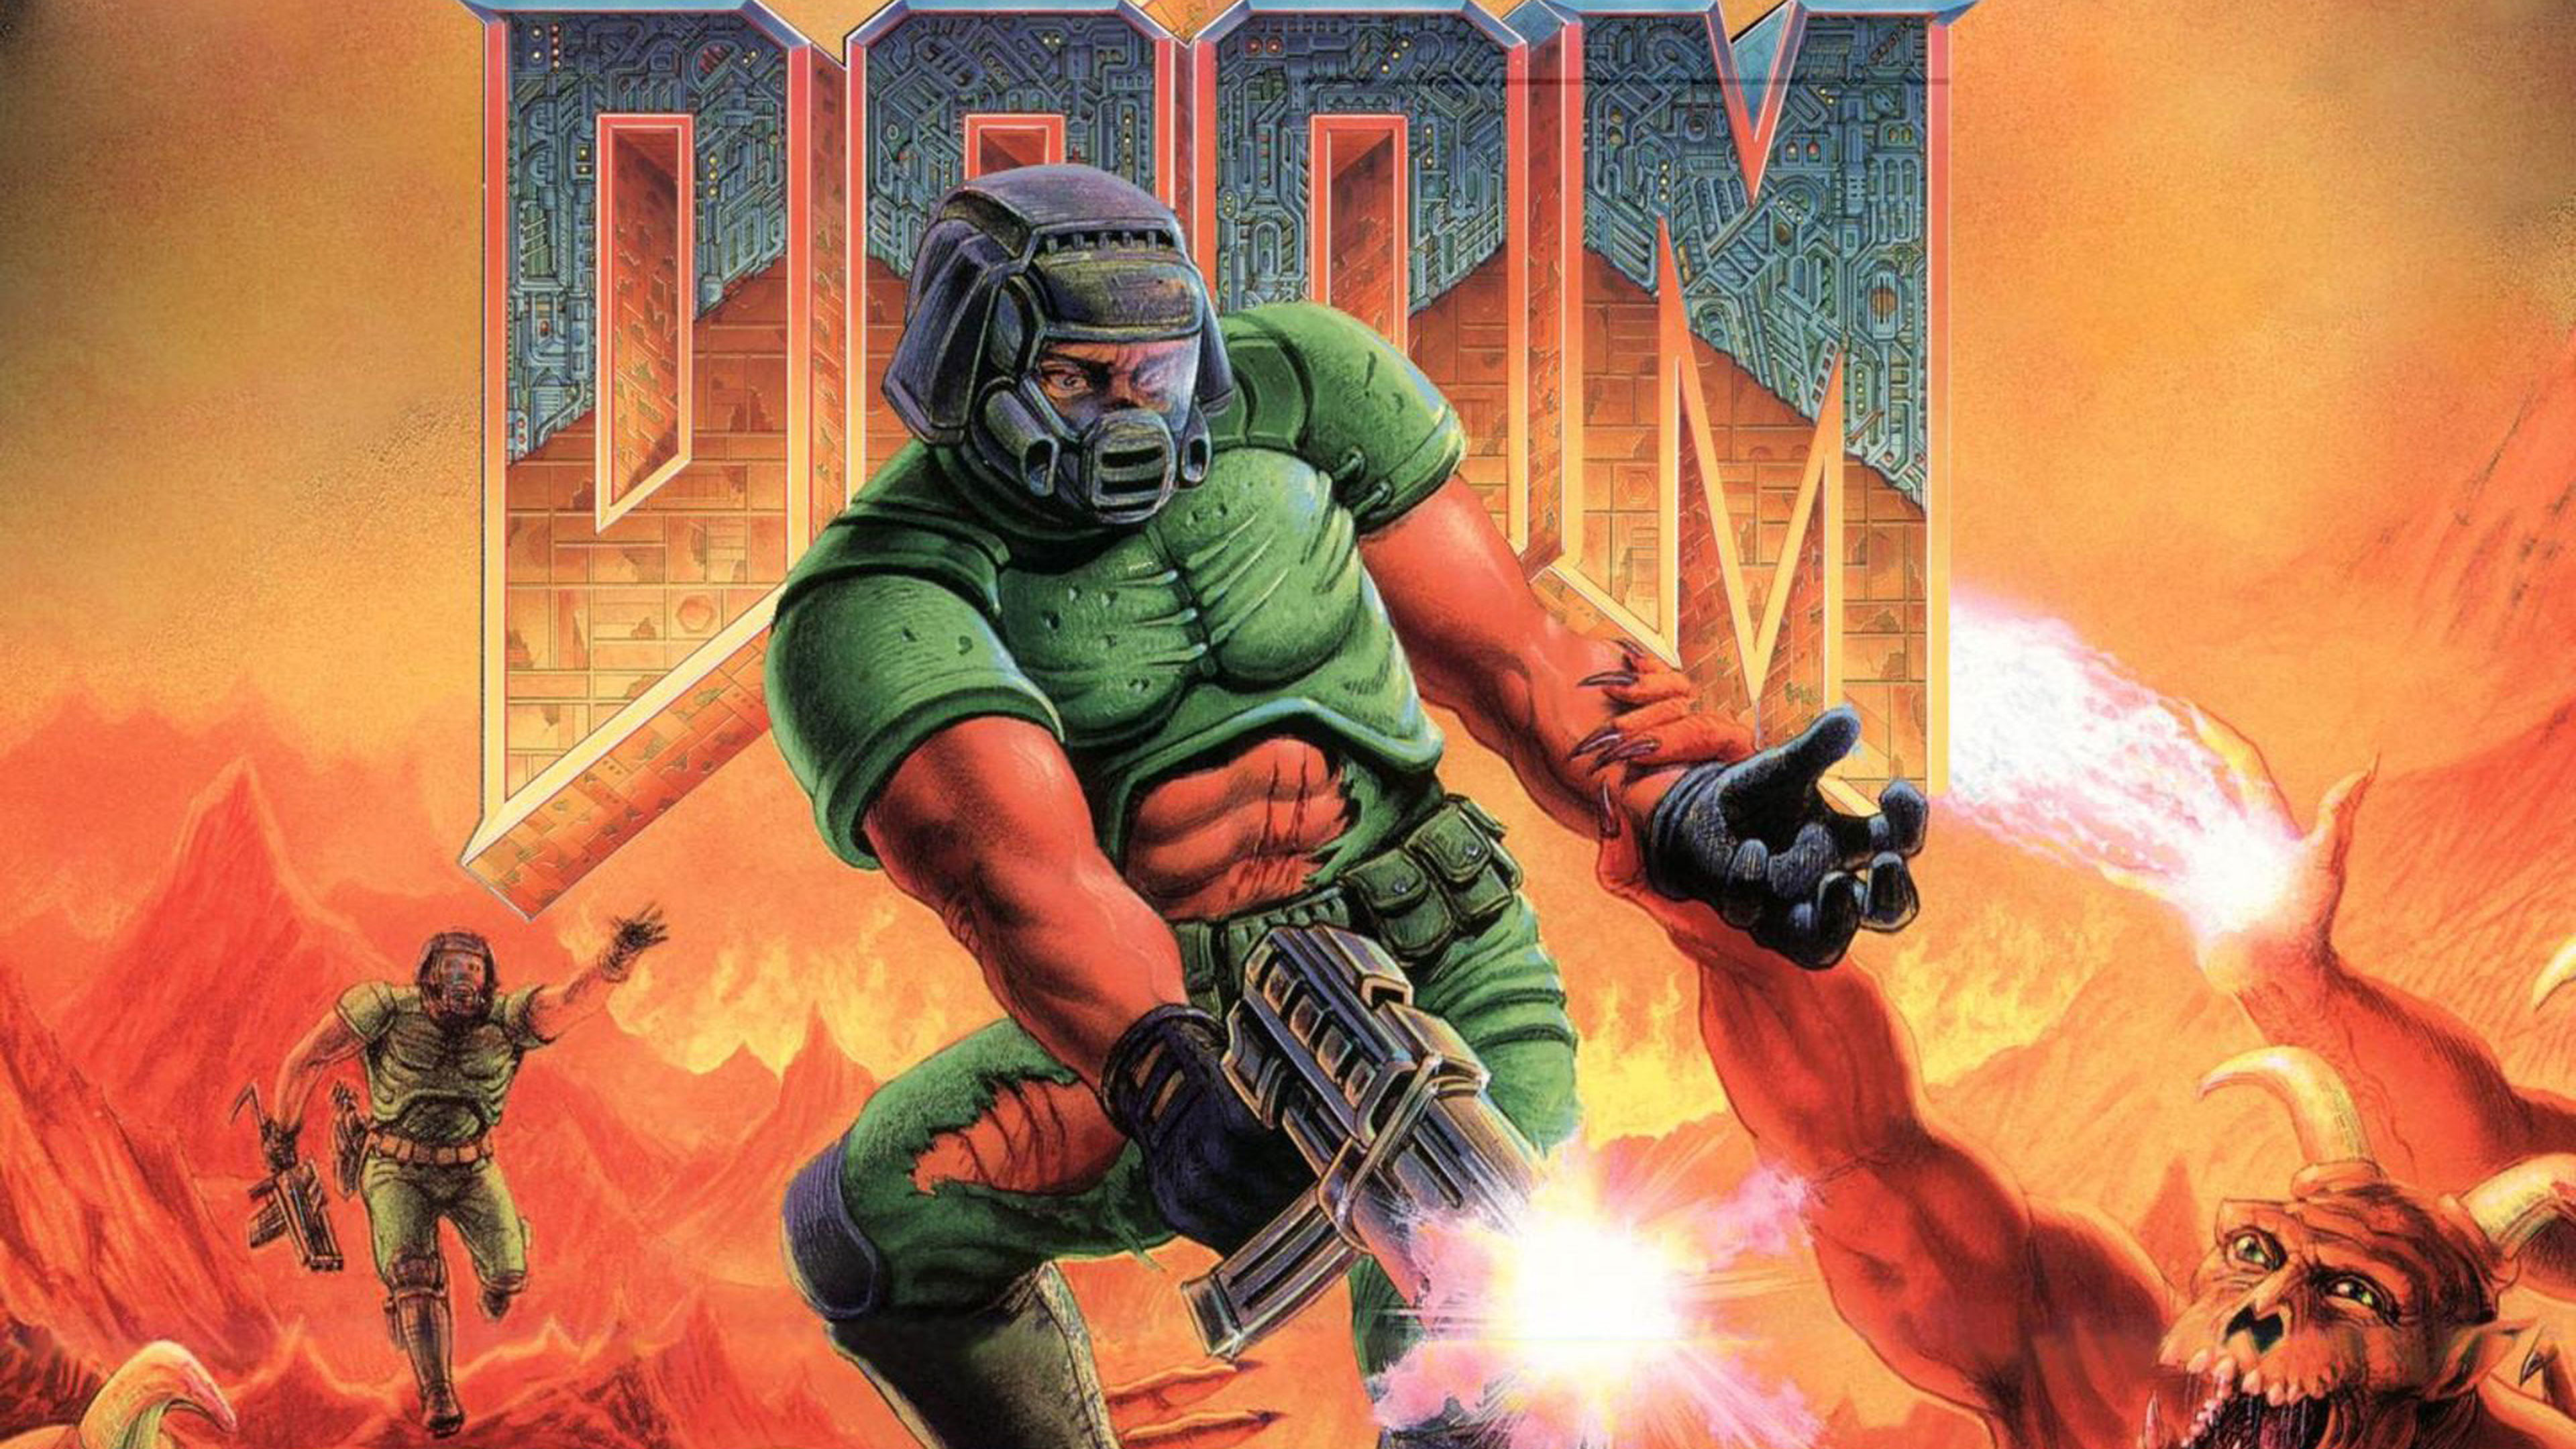 Doom Eternal in Doom 